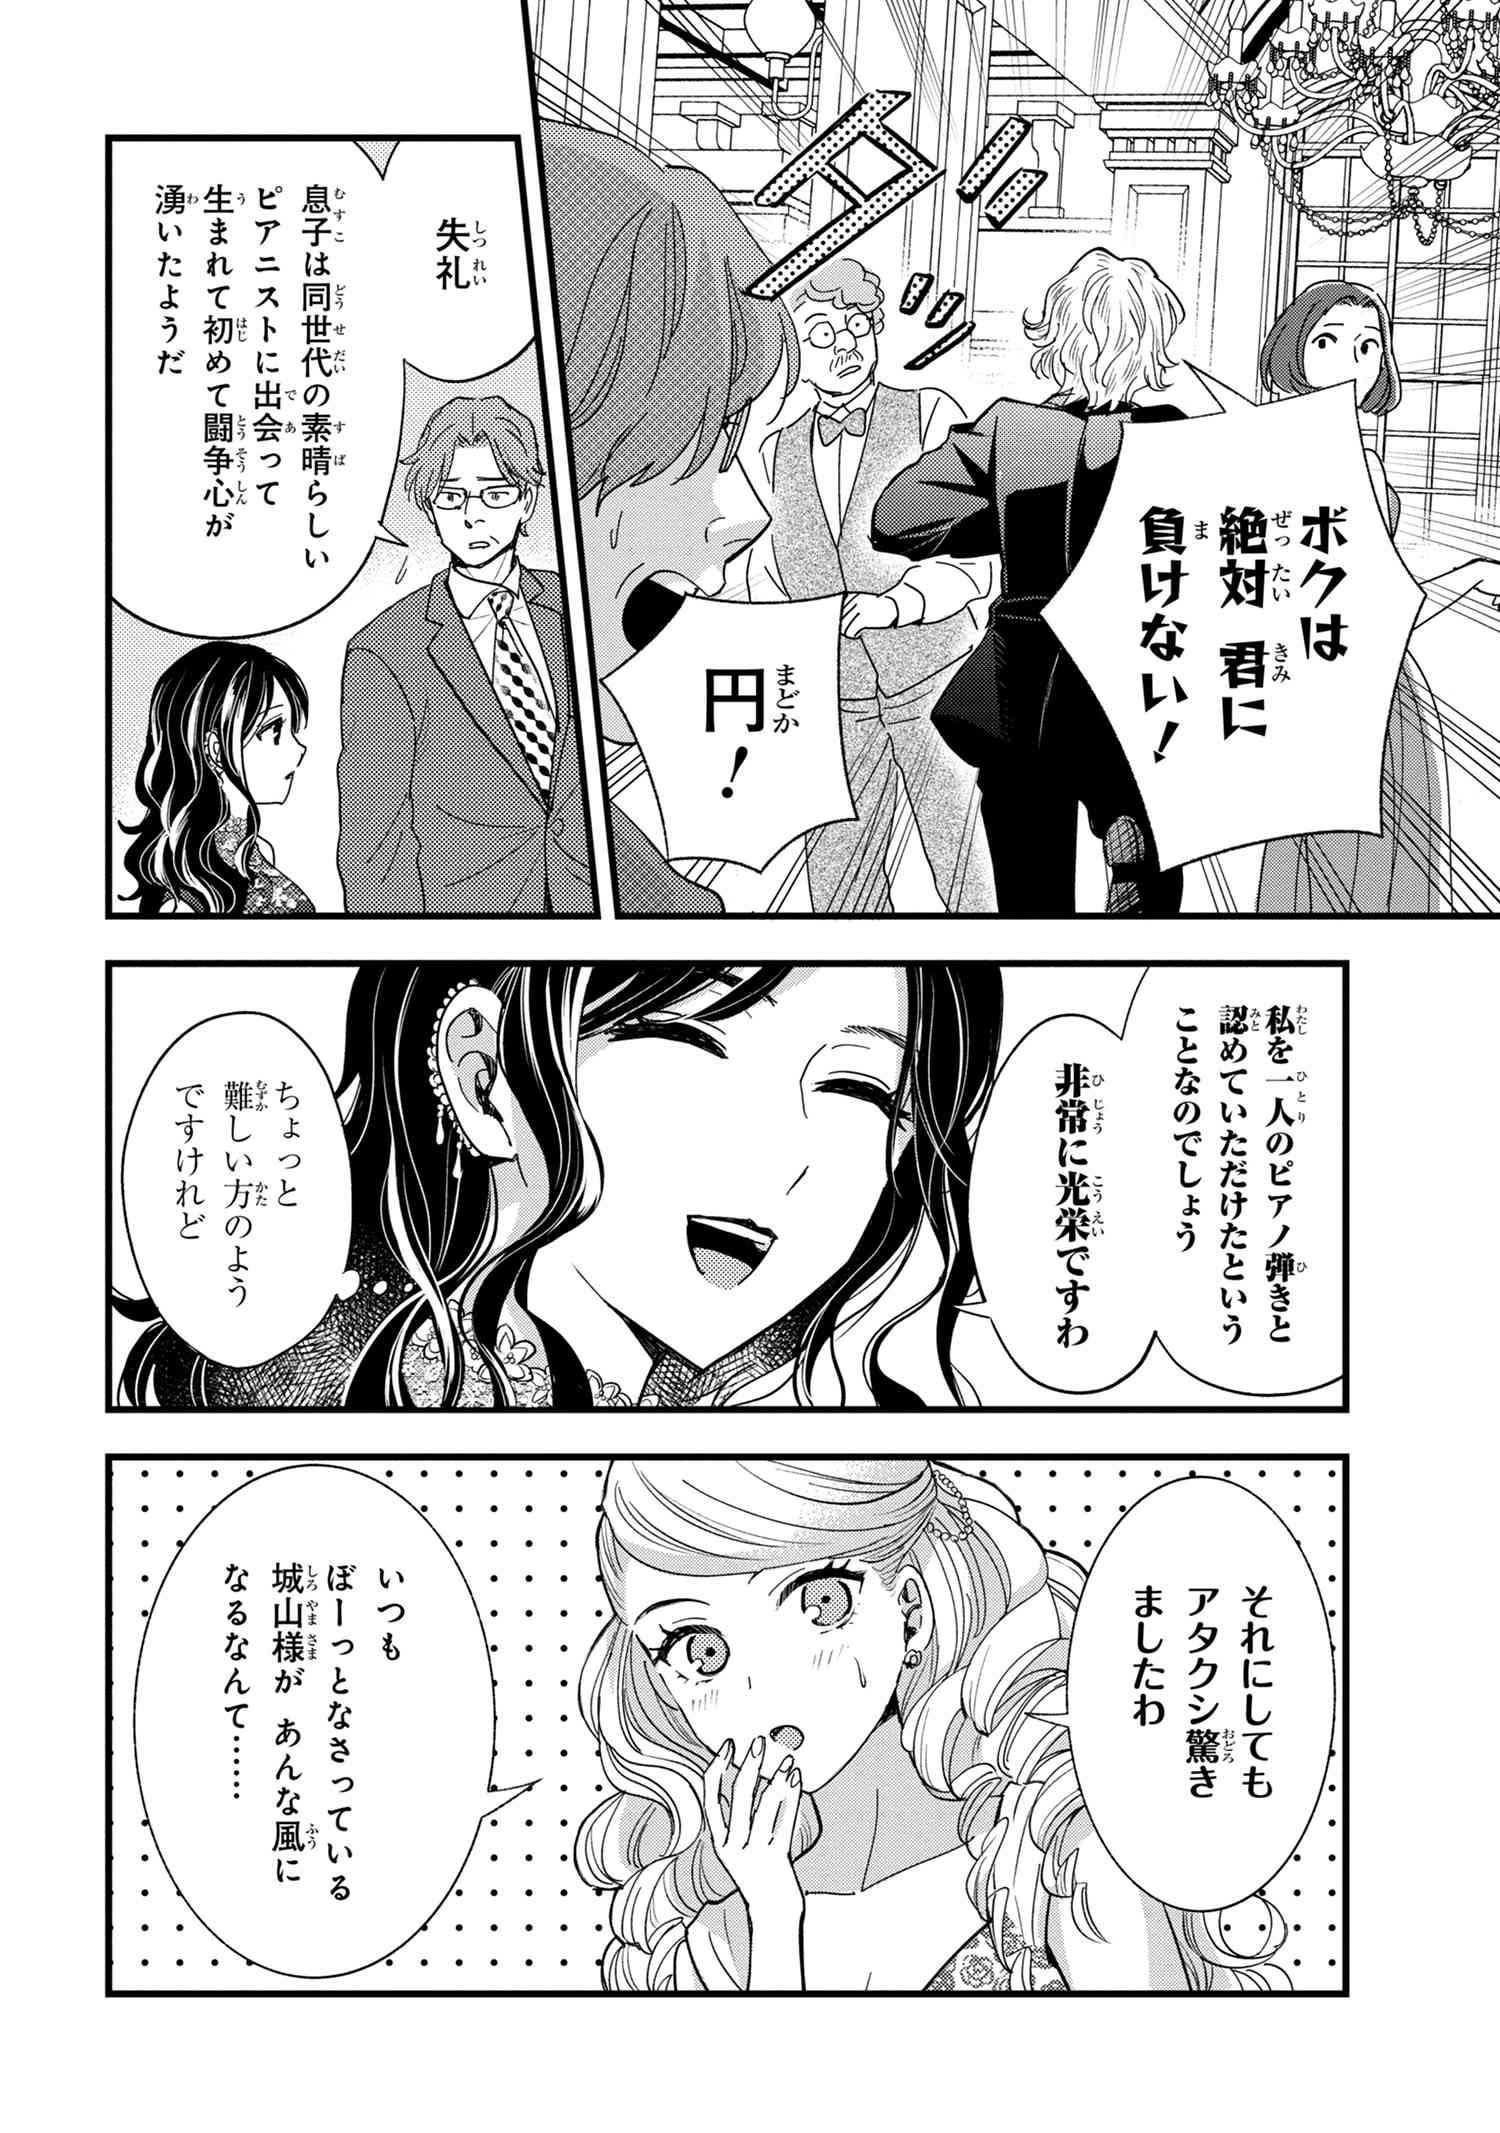 Reiko no Fuugi Akuyaku Reijou to Yobarete imasu ga, tada no Binbou Musume desu - Chapter 14-3 - Page 5